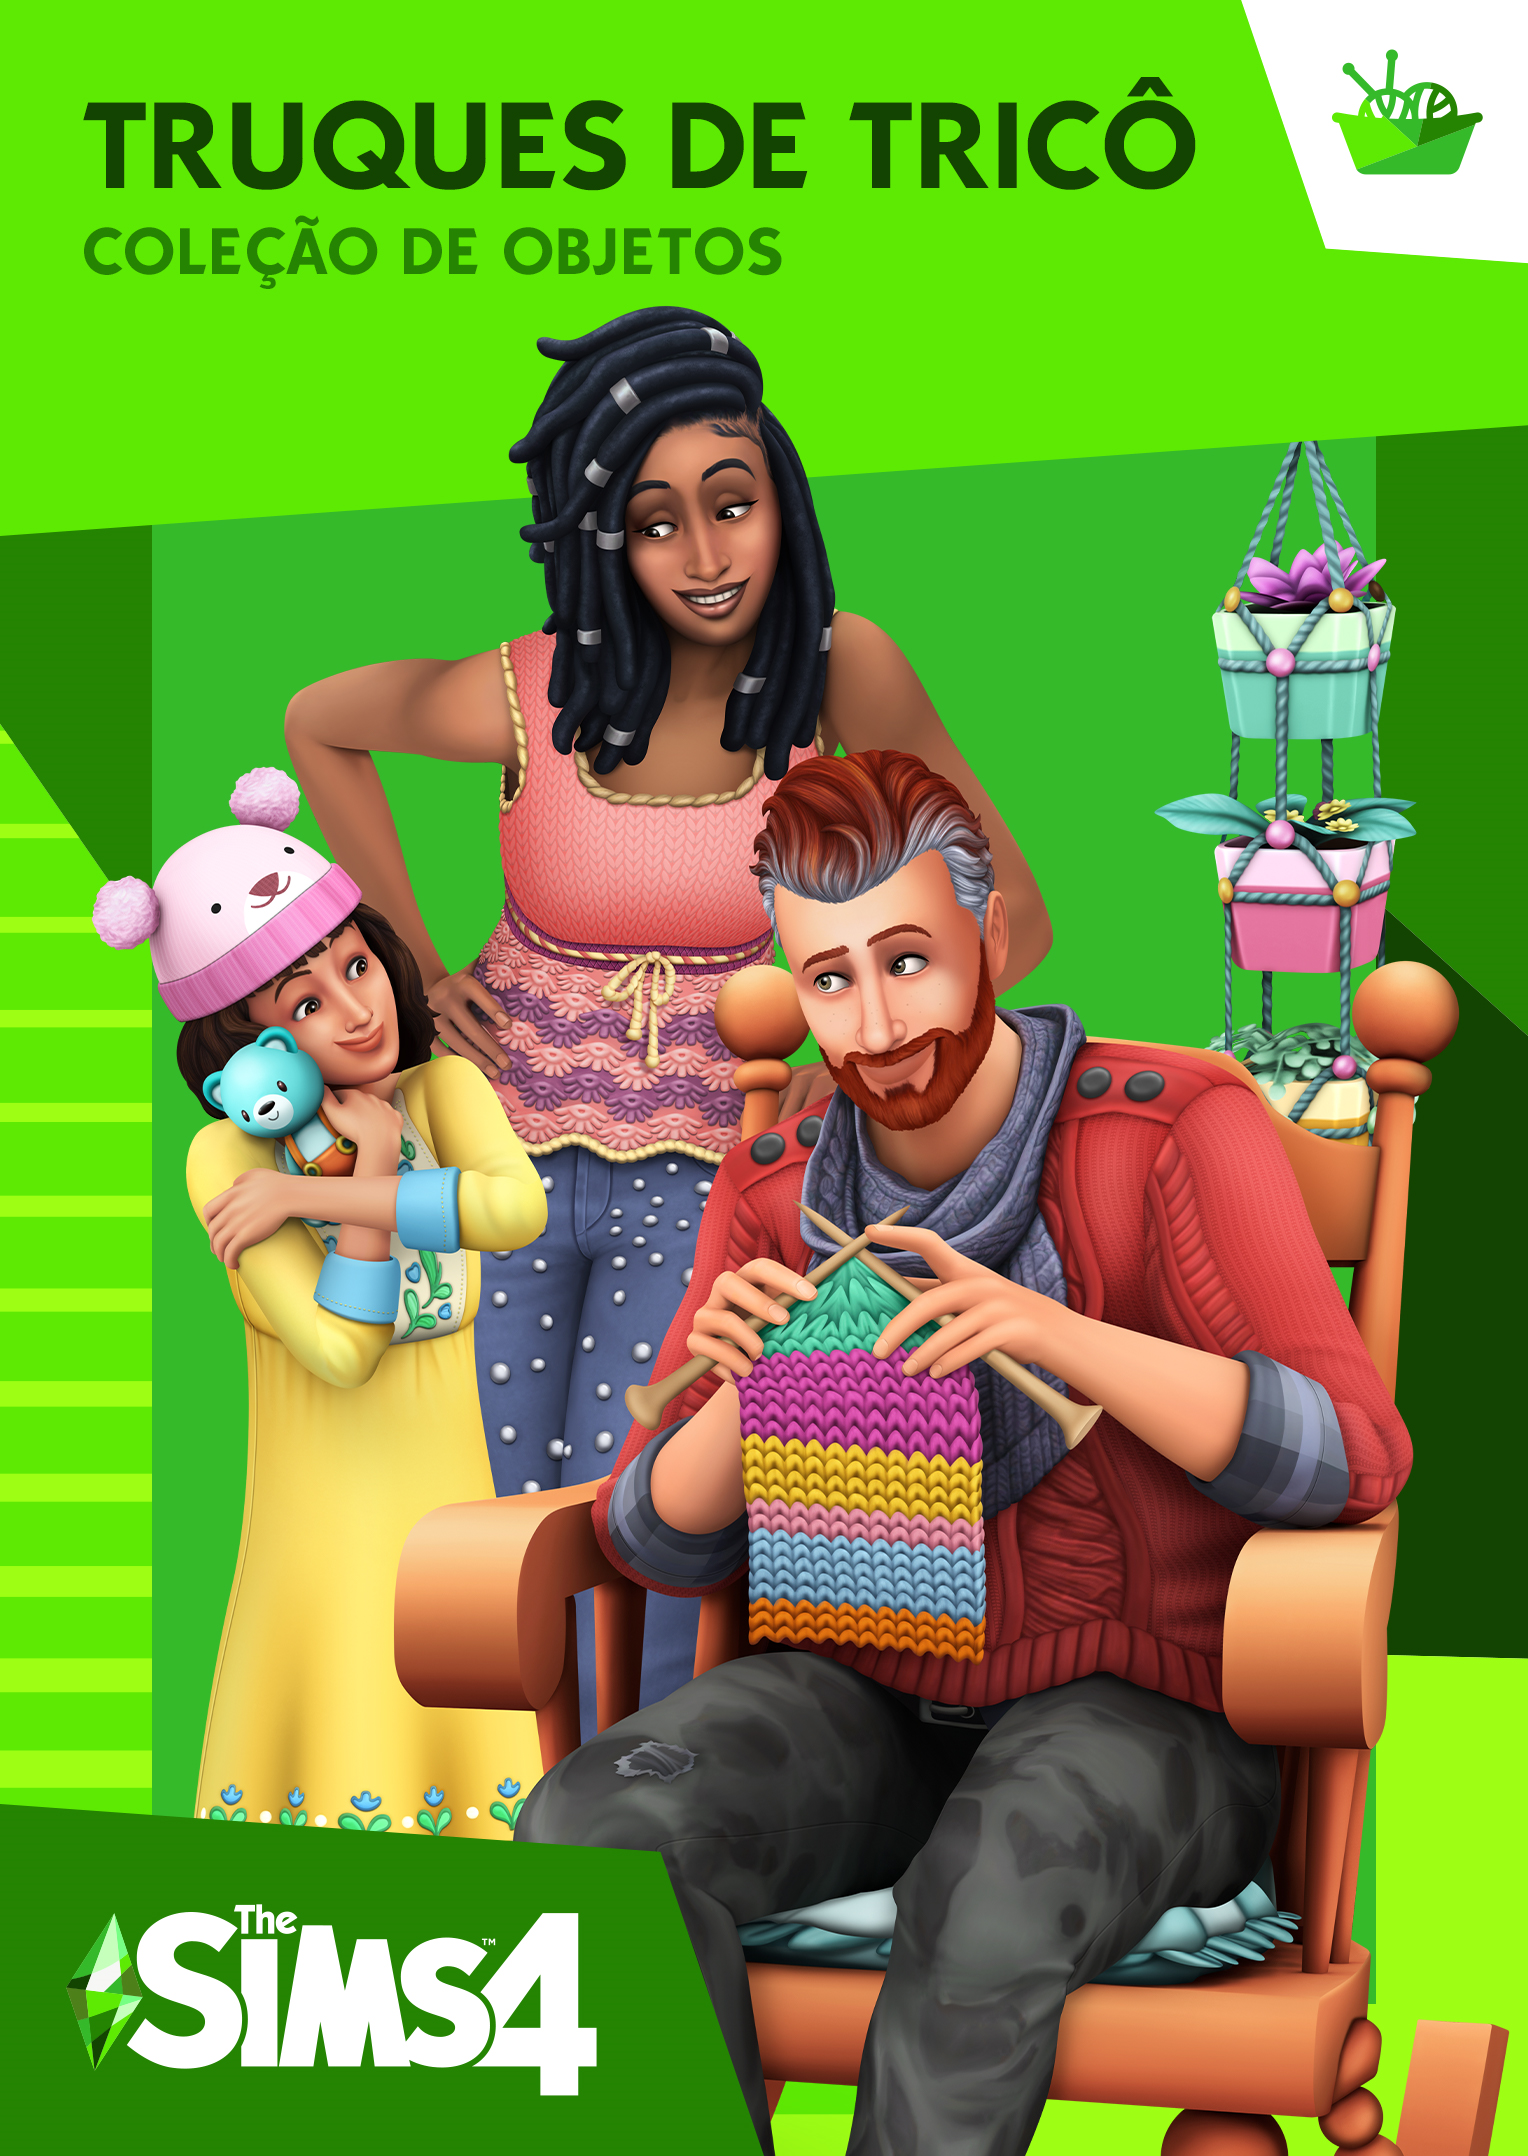 Dicas - The Sims™ JogueGrátis - Site Oficial da EA